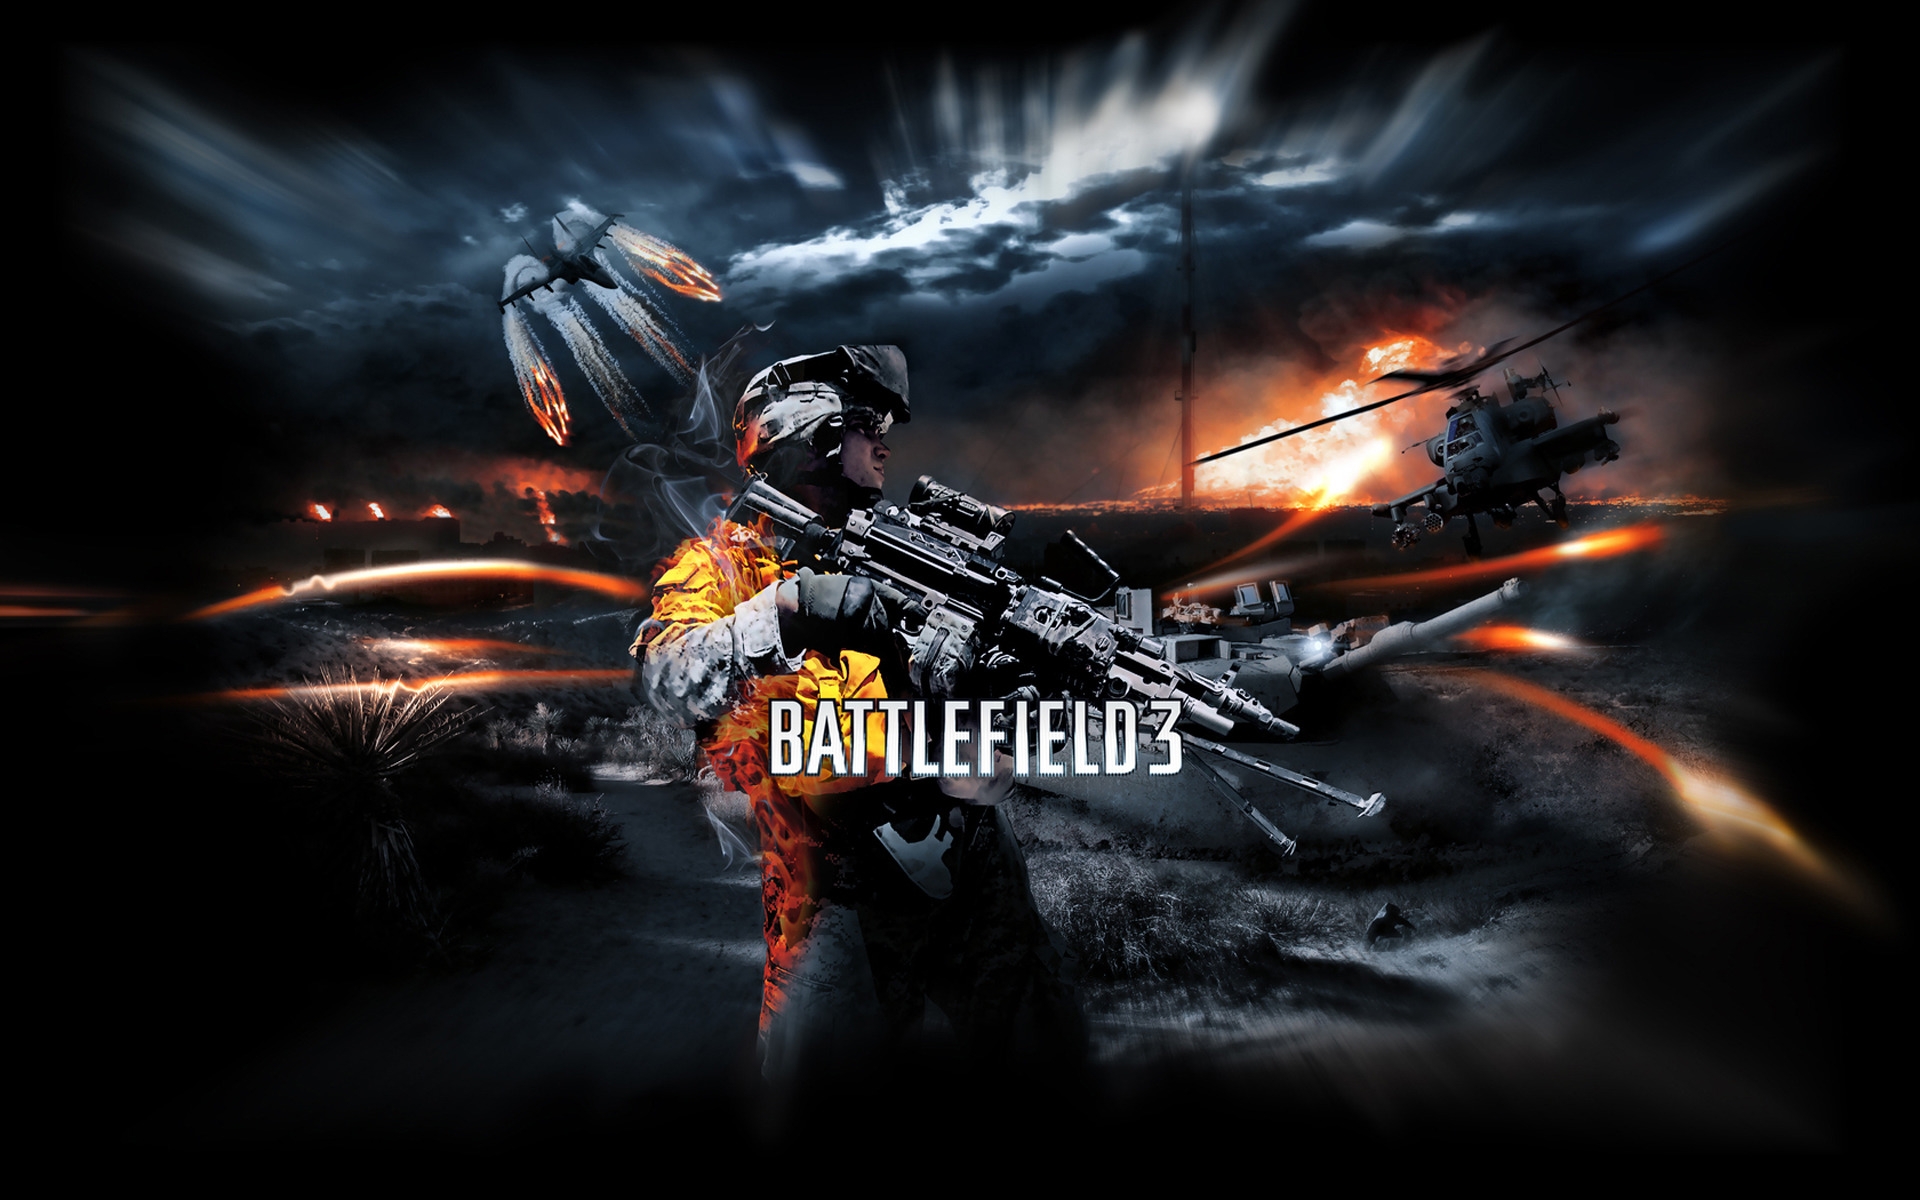 Battlefield 3 Poster for 1920 x 1200 widescreen resolution